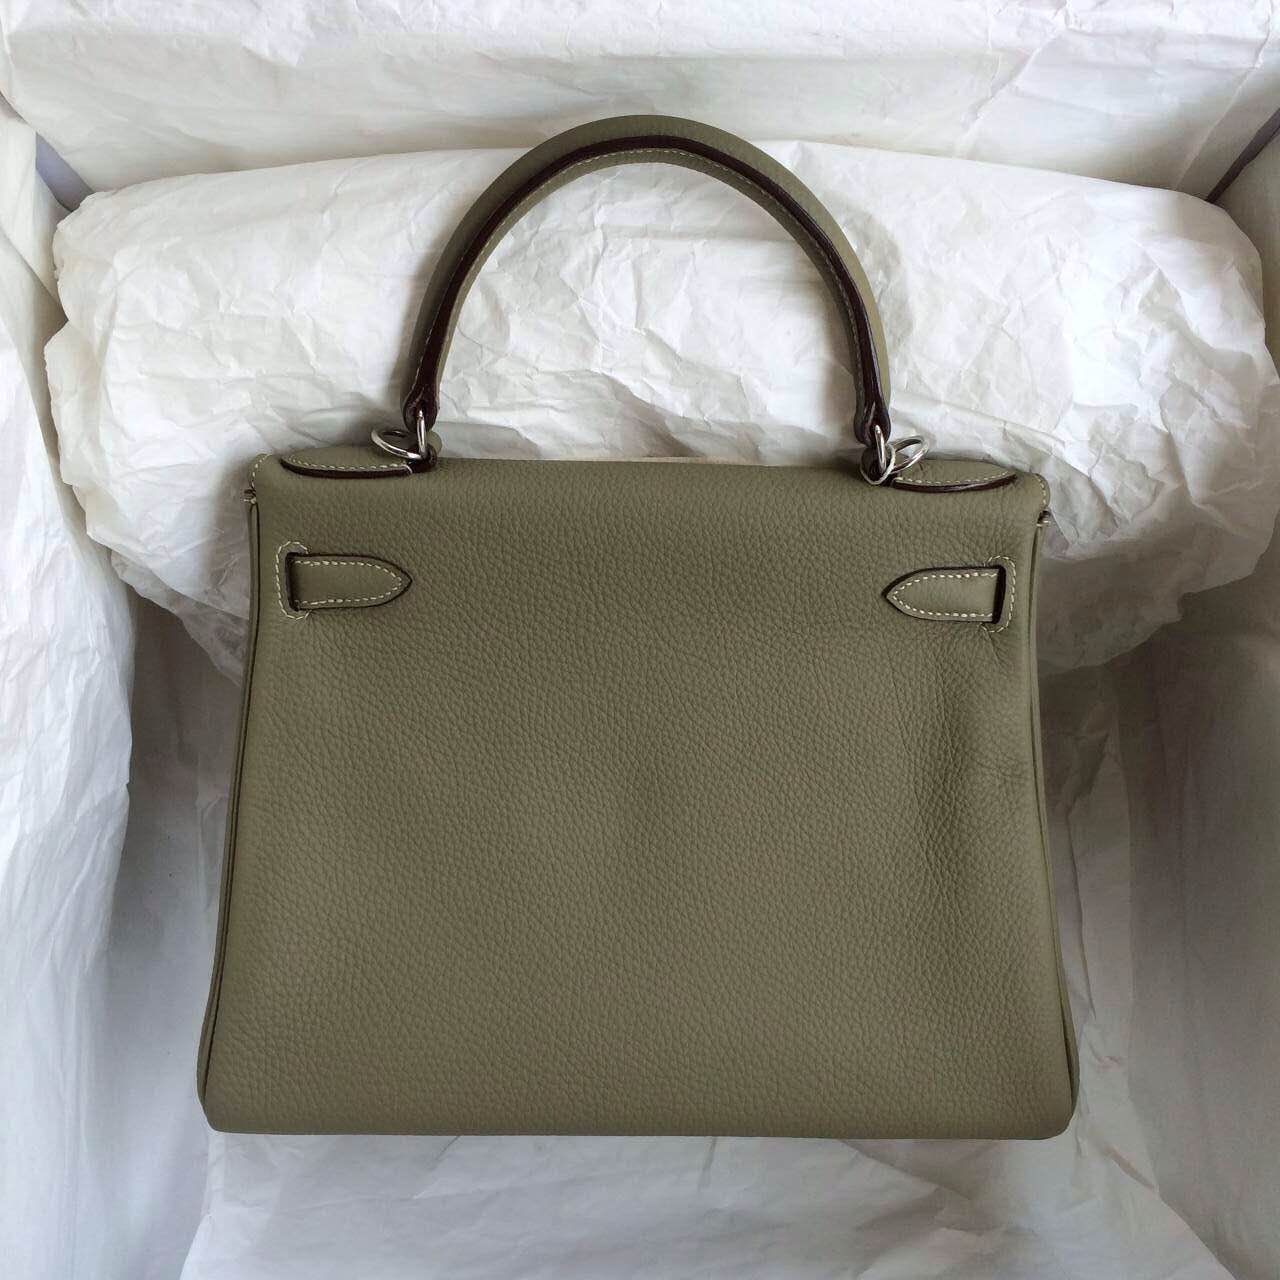 28cm Hermes Kelly Bag Retourne CK64 Celadon Color Togo Calfskin Leather Handbag